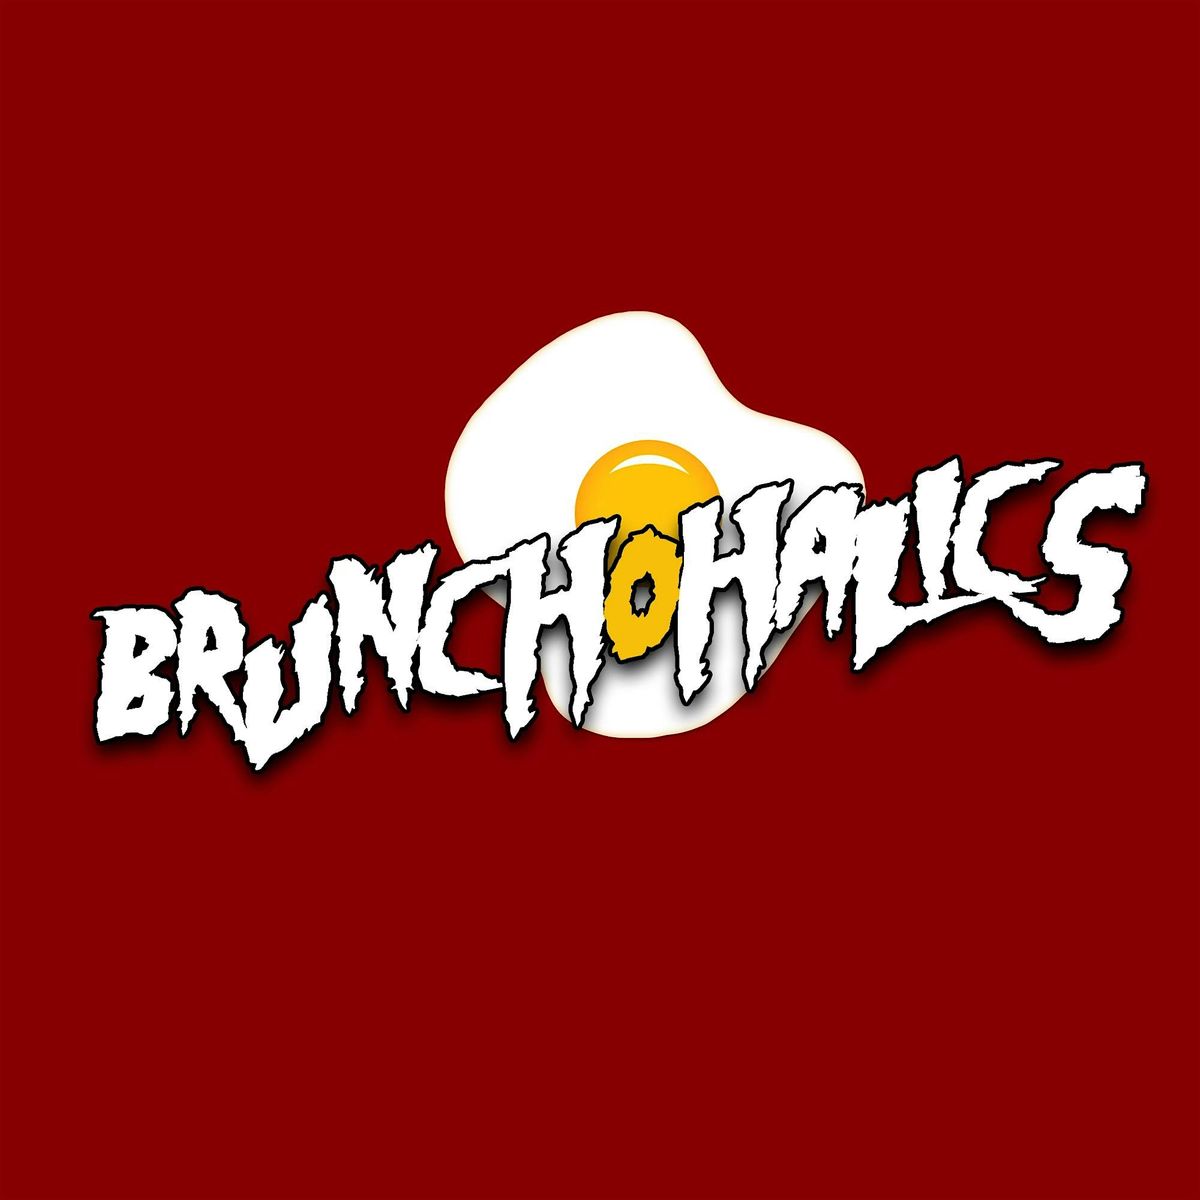 Brunch-O-Halics (Sunday Brunch)